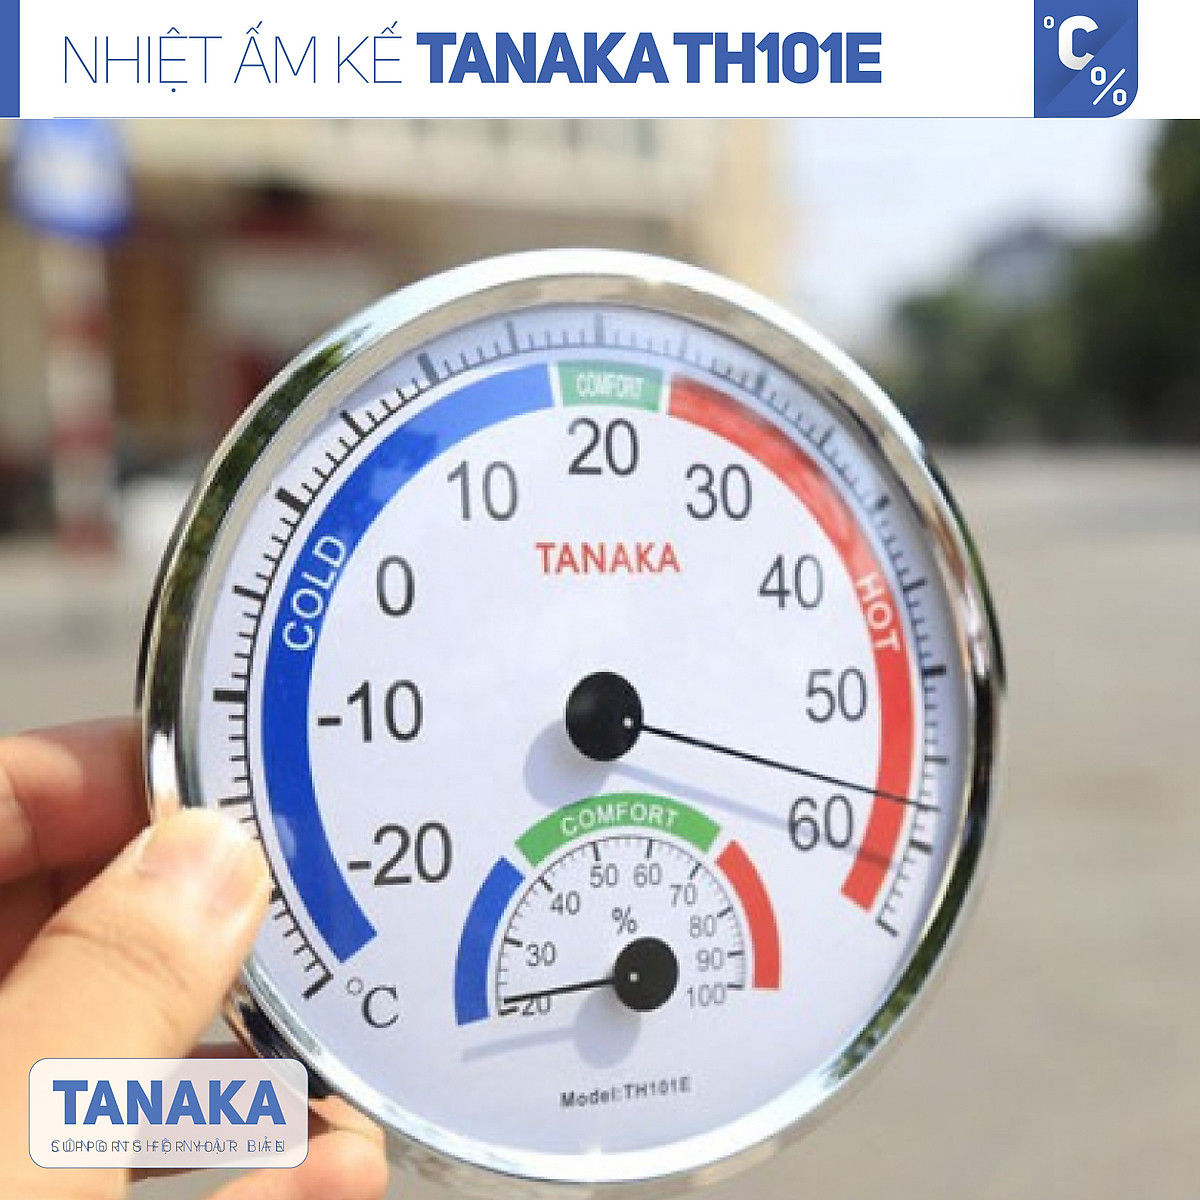 Nhiệt ẩm kế cơ học đo nhiệt độ và độ ẩm Tanaka TH101E. Đồng hồ đo nhiệt độ